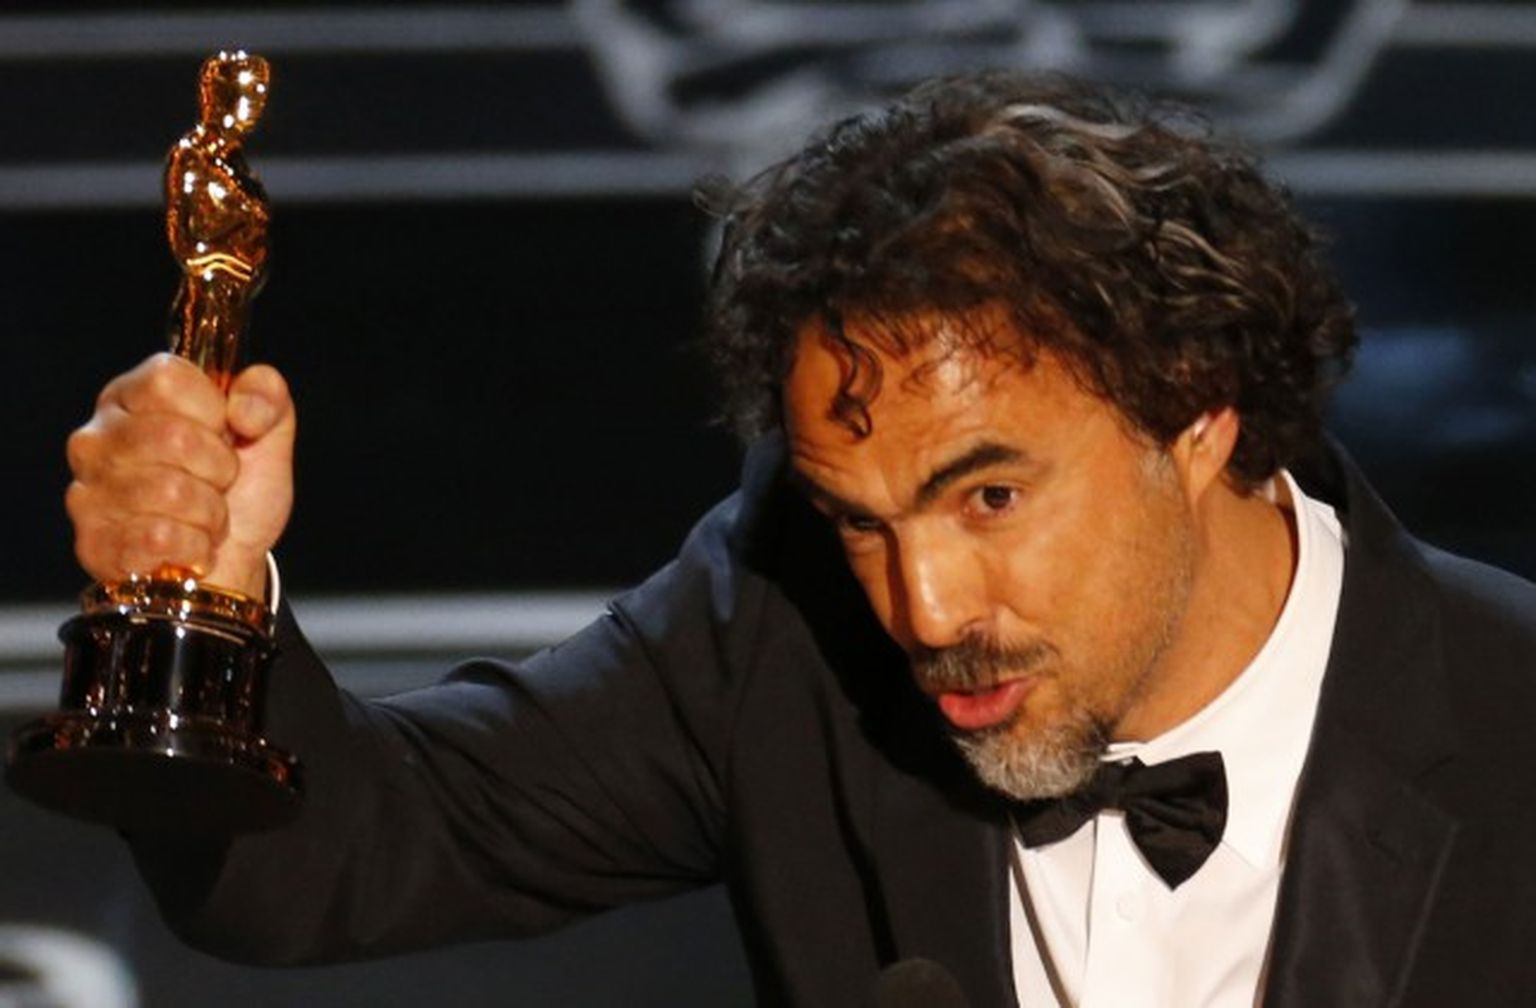 Alehandro Gonzalezs Injaritu saņem Oskaru par filmu "Birdman" (Putncilvēks")